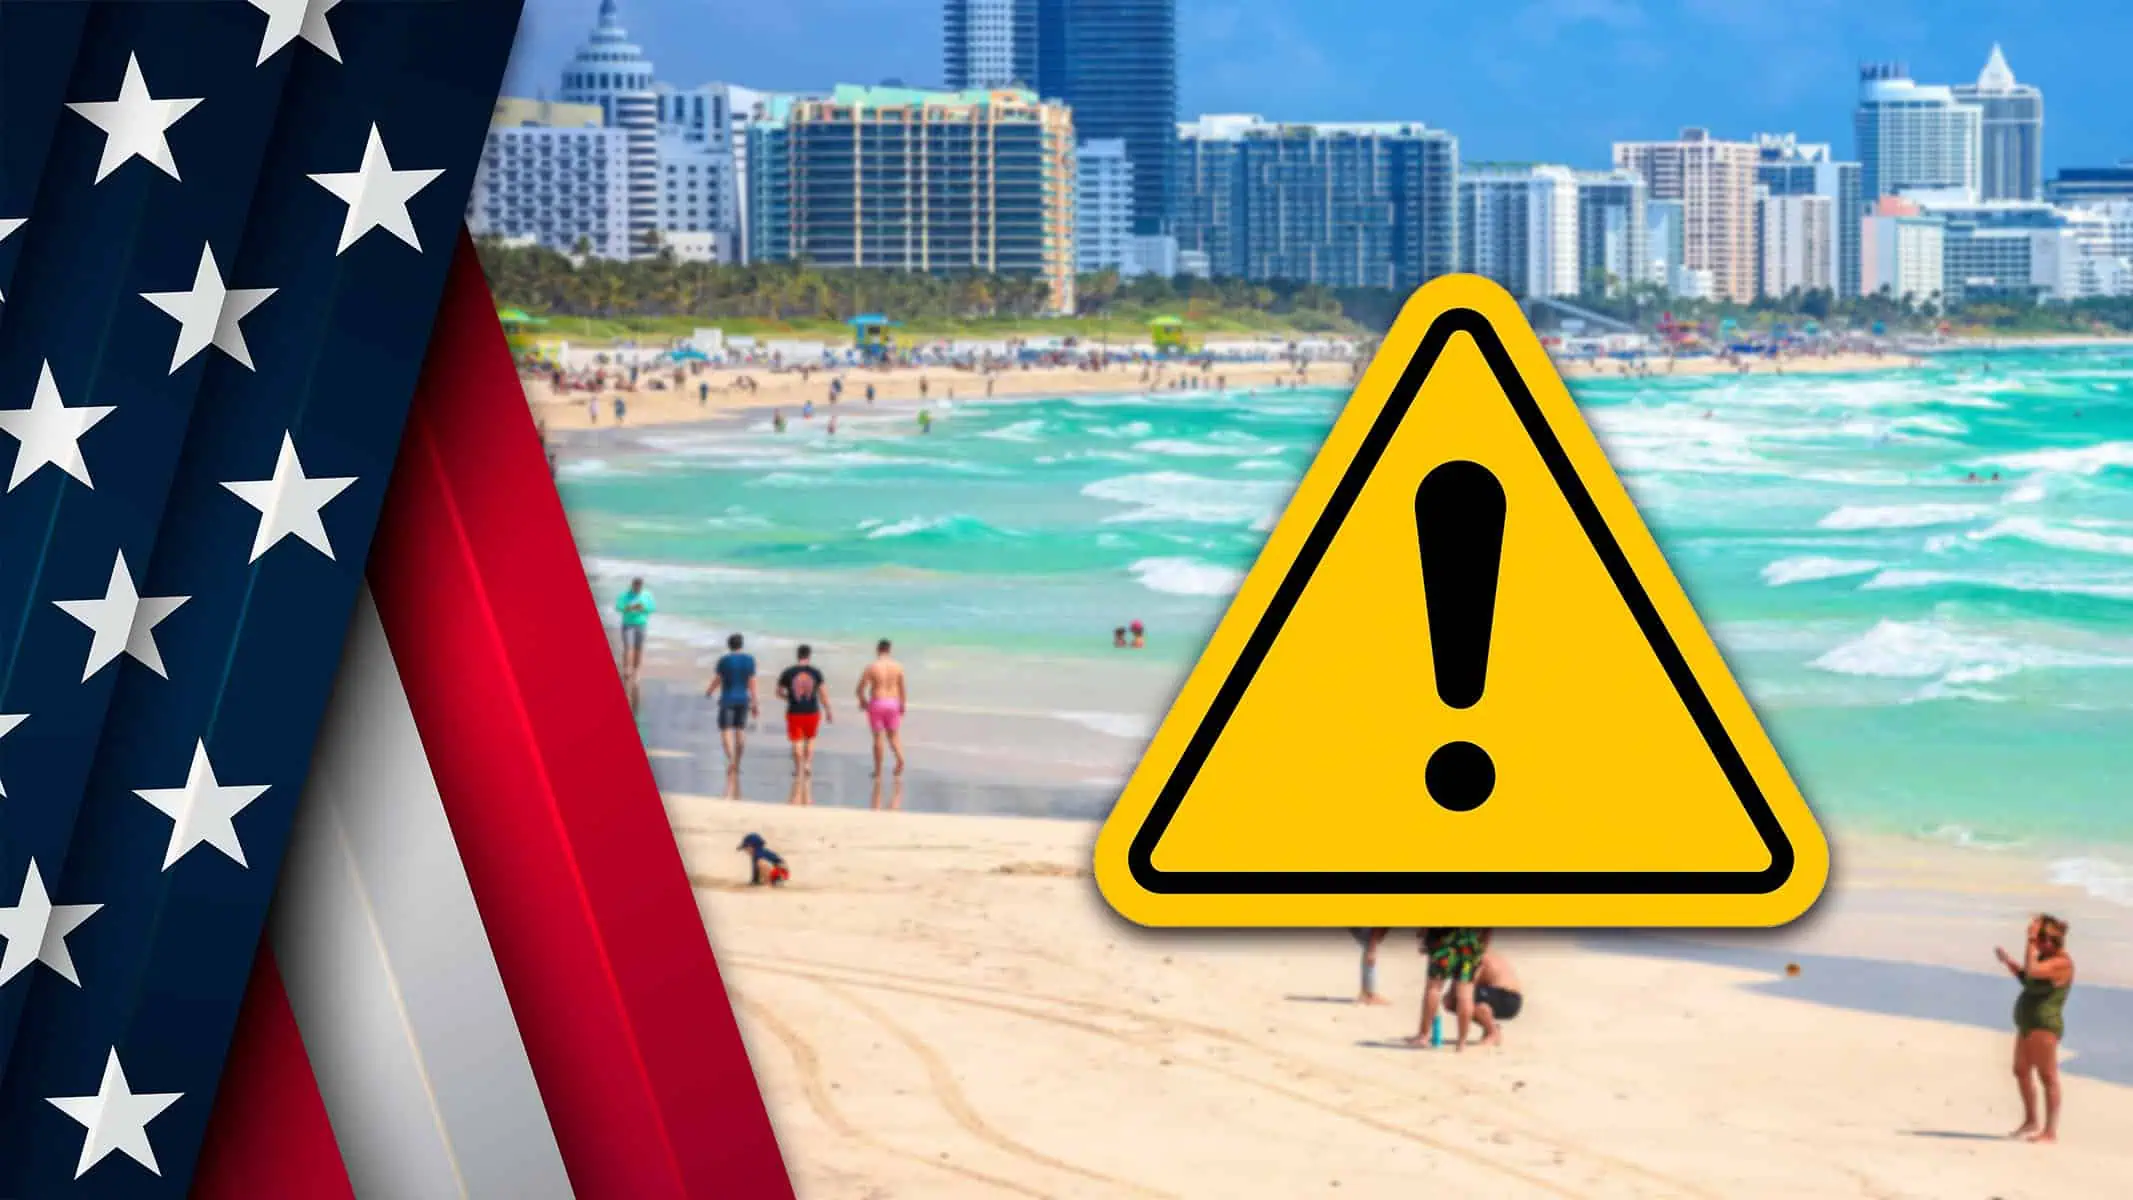 Evita Estas Playas en Miami Dade: Alta Contaminación Detectada